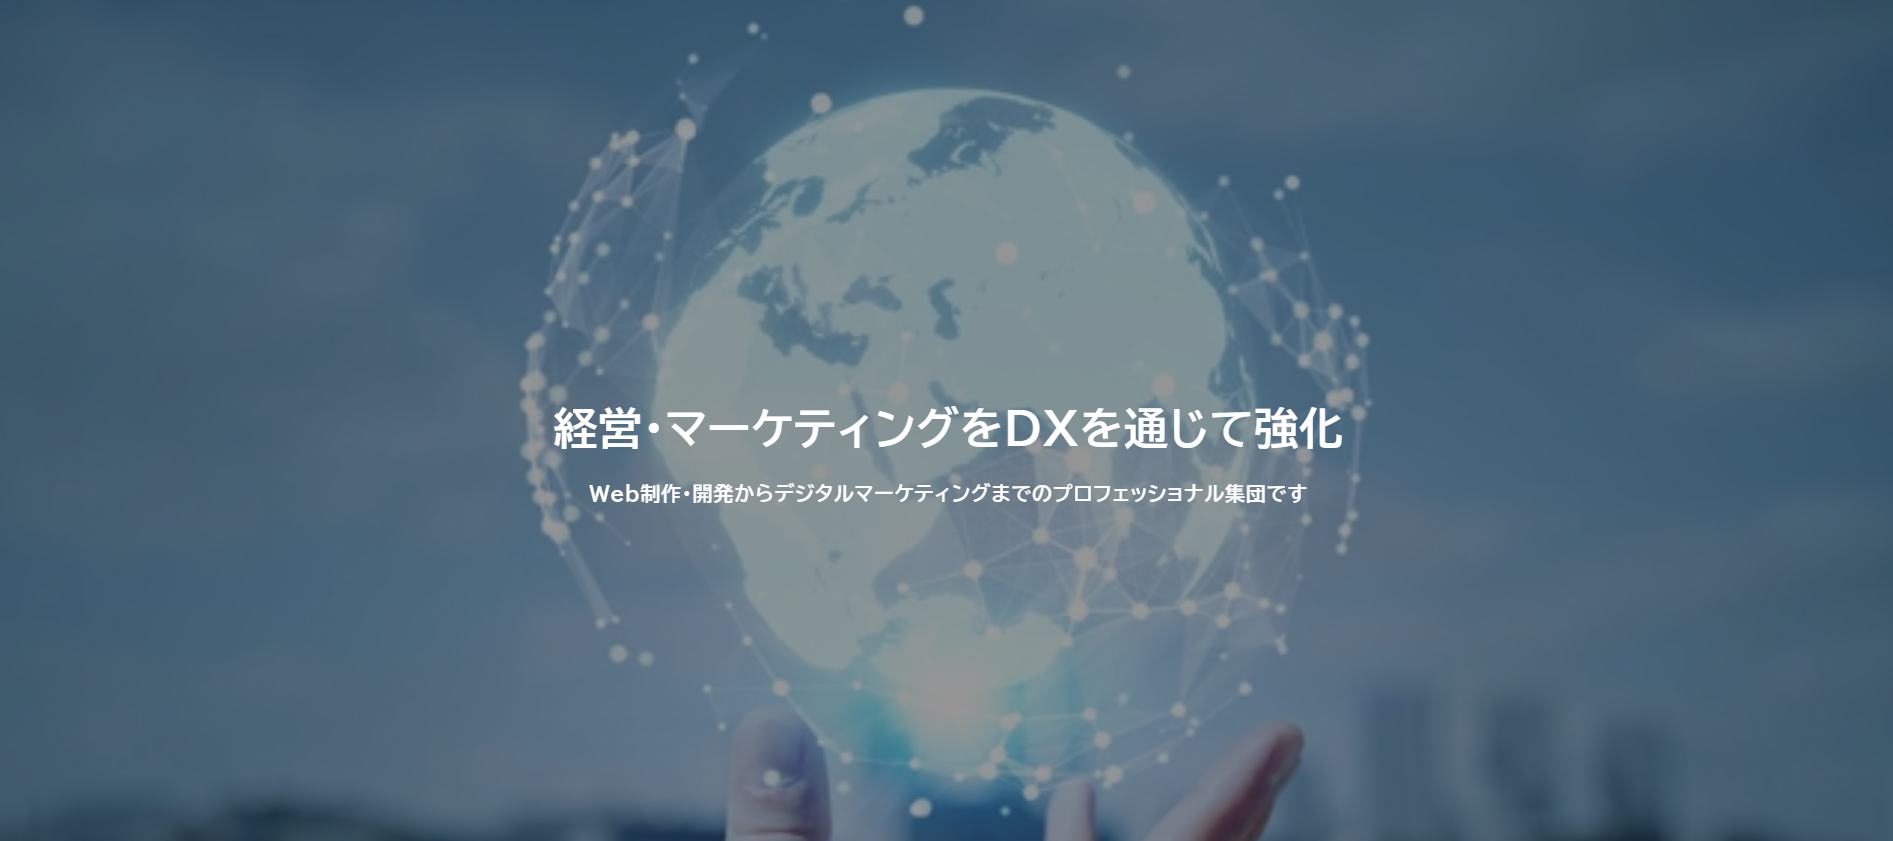 UDX株式会社のUDX株式会社:ホームページ制作サービス